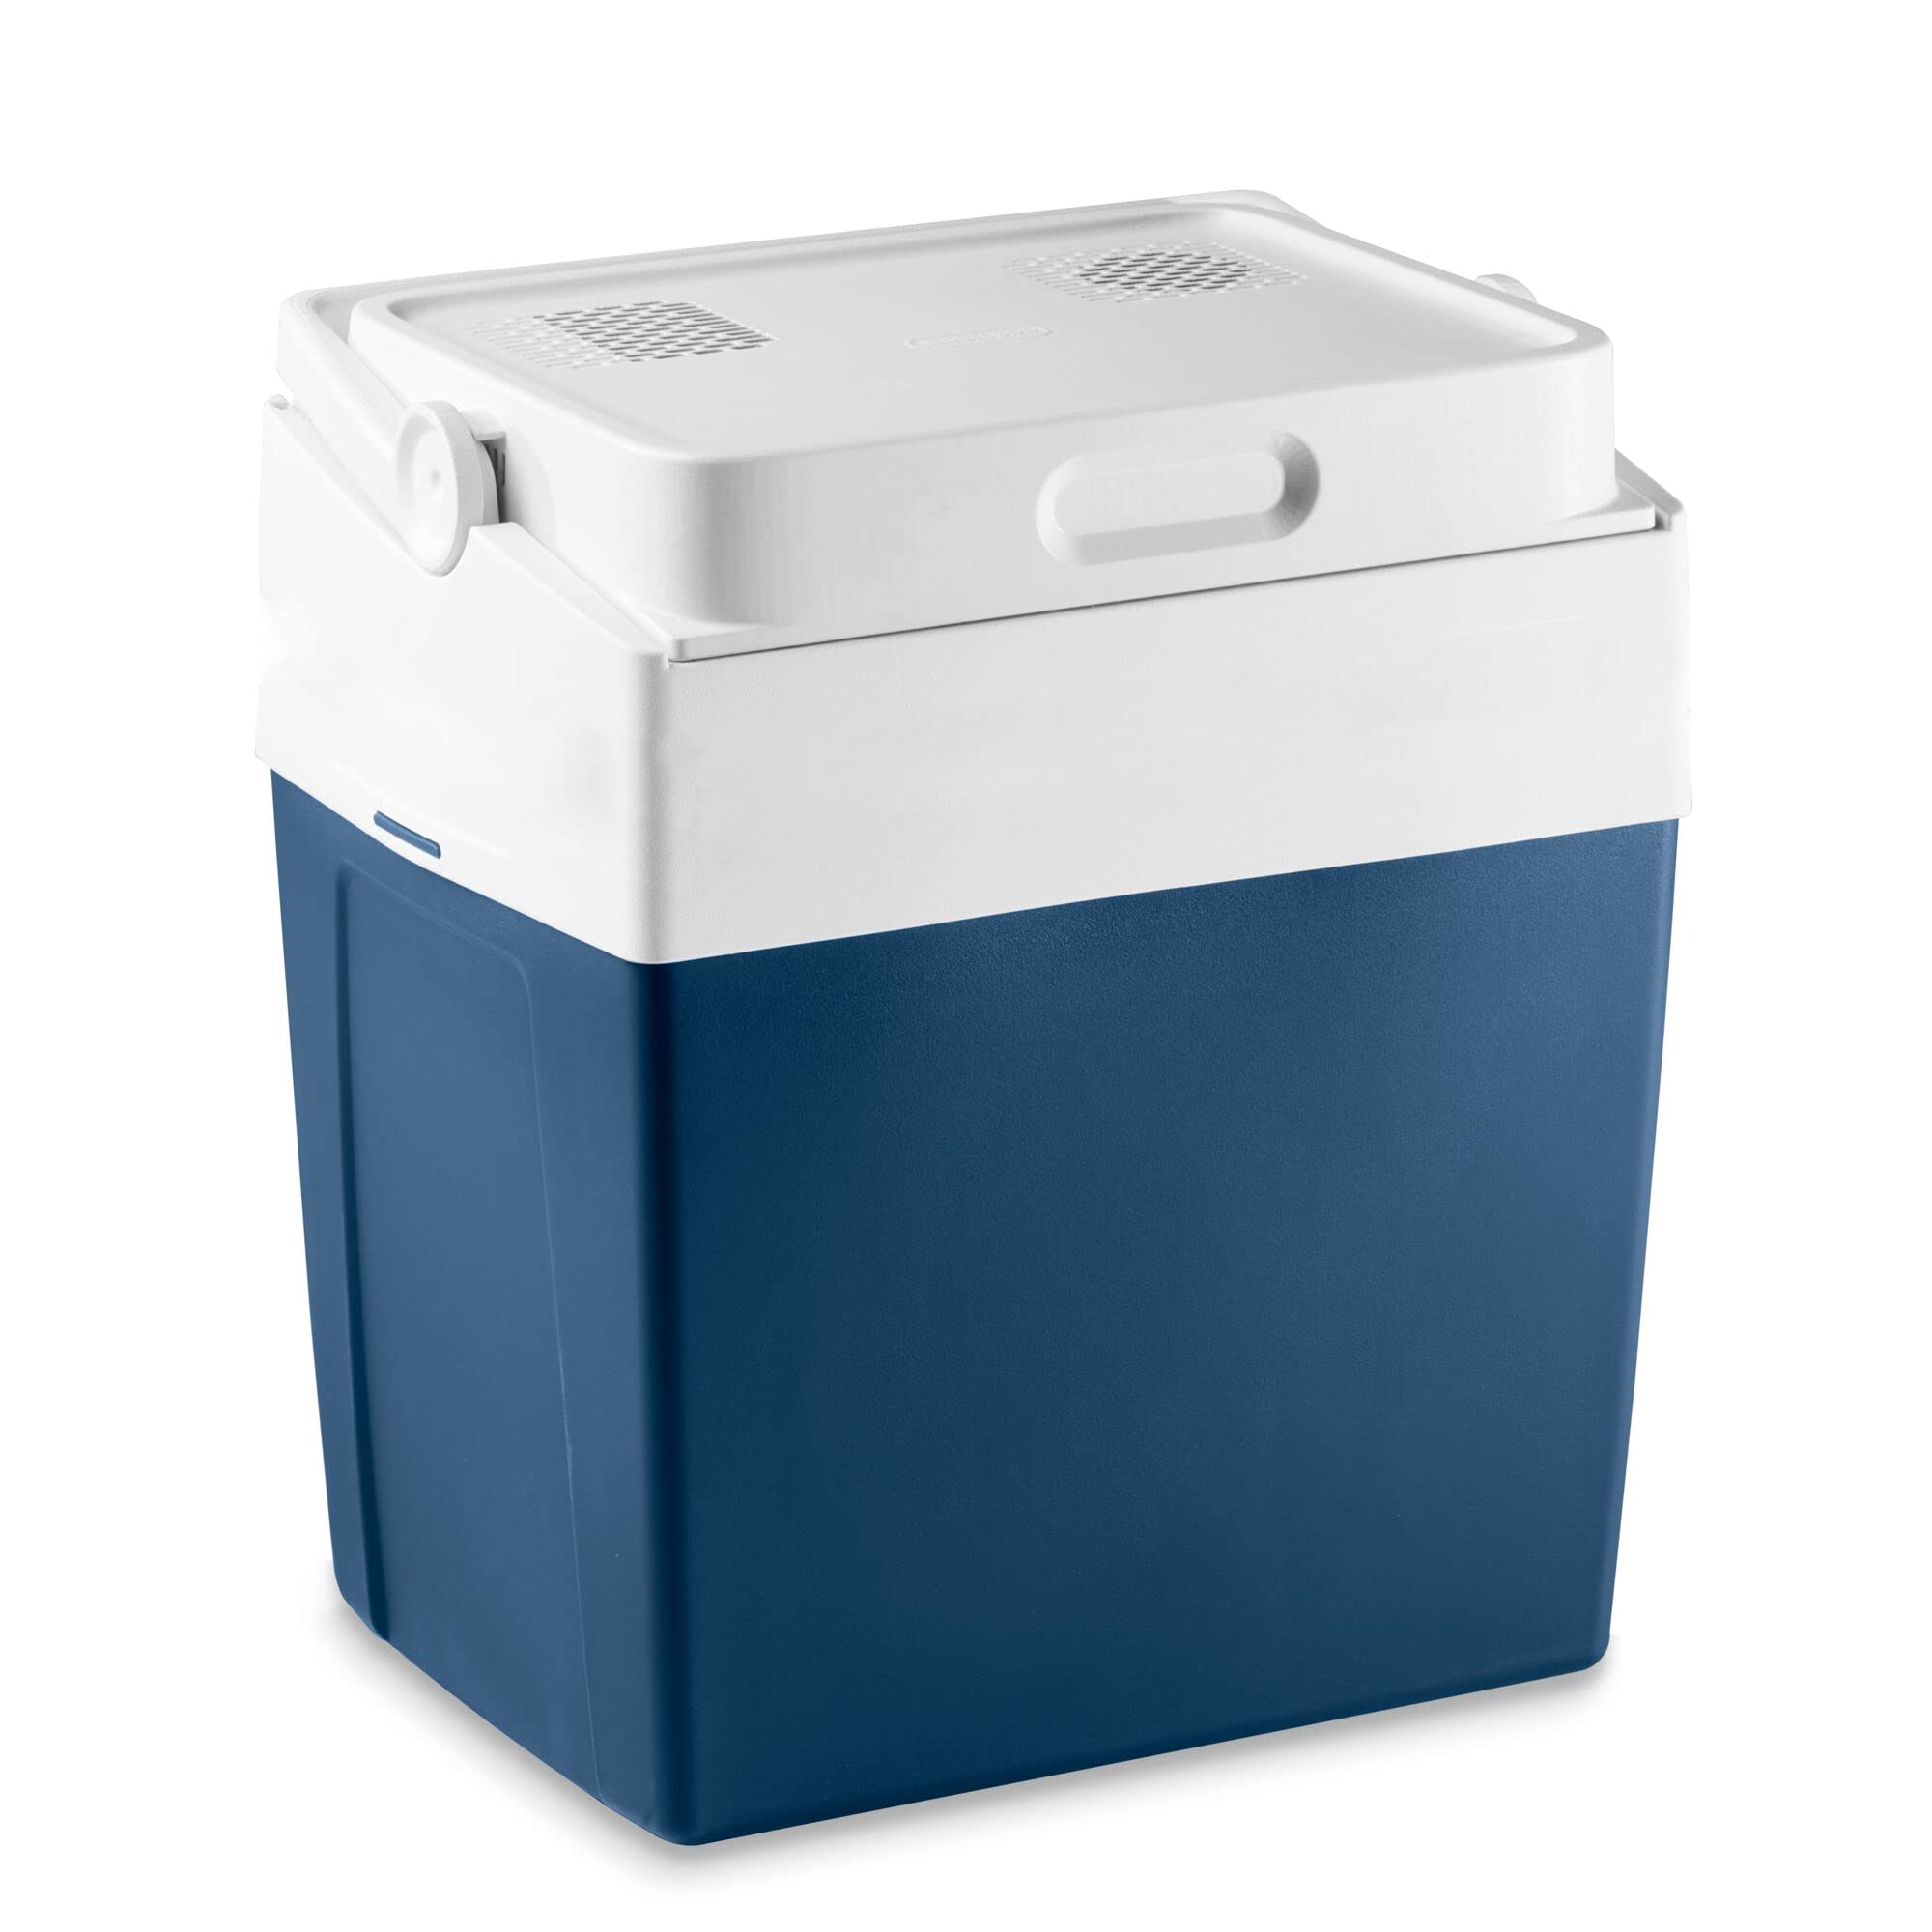 MOBICOOL MV30 DC Kühlbox, elektrisch, tragbar, blau, Fassungsvermögen 29 L, Anschluss 12V Zigarettenanzünder, Kühlen bis 17 °C unter Raumtemperatur